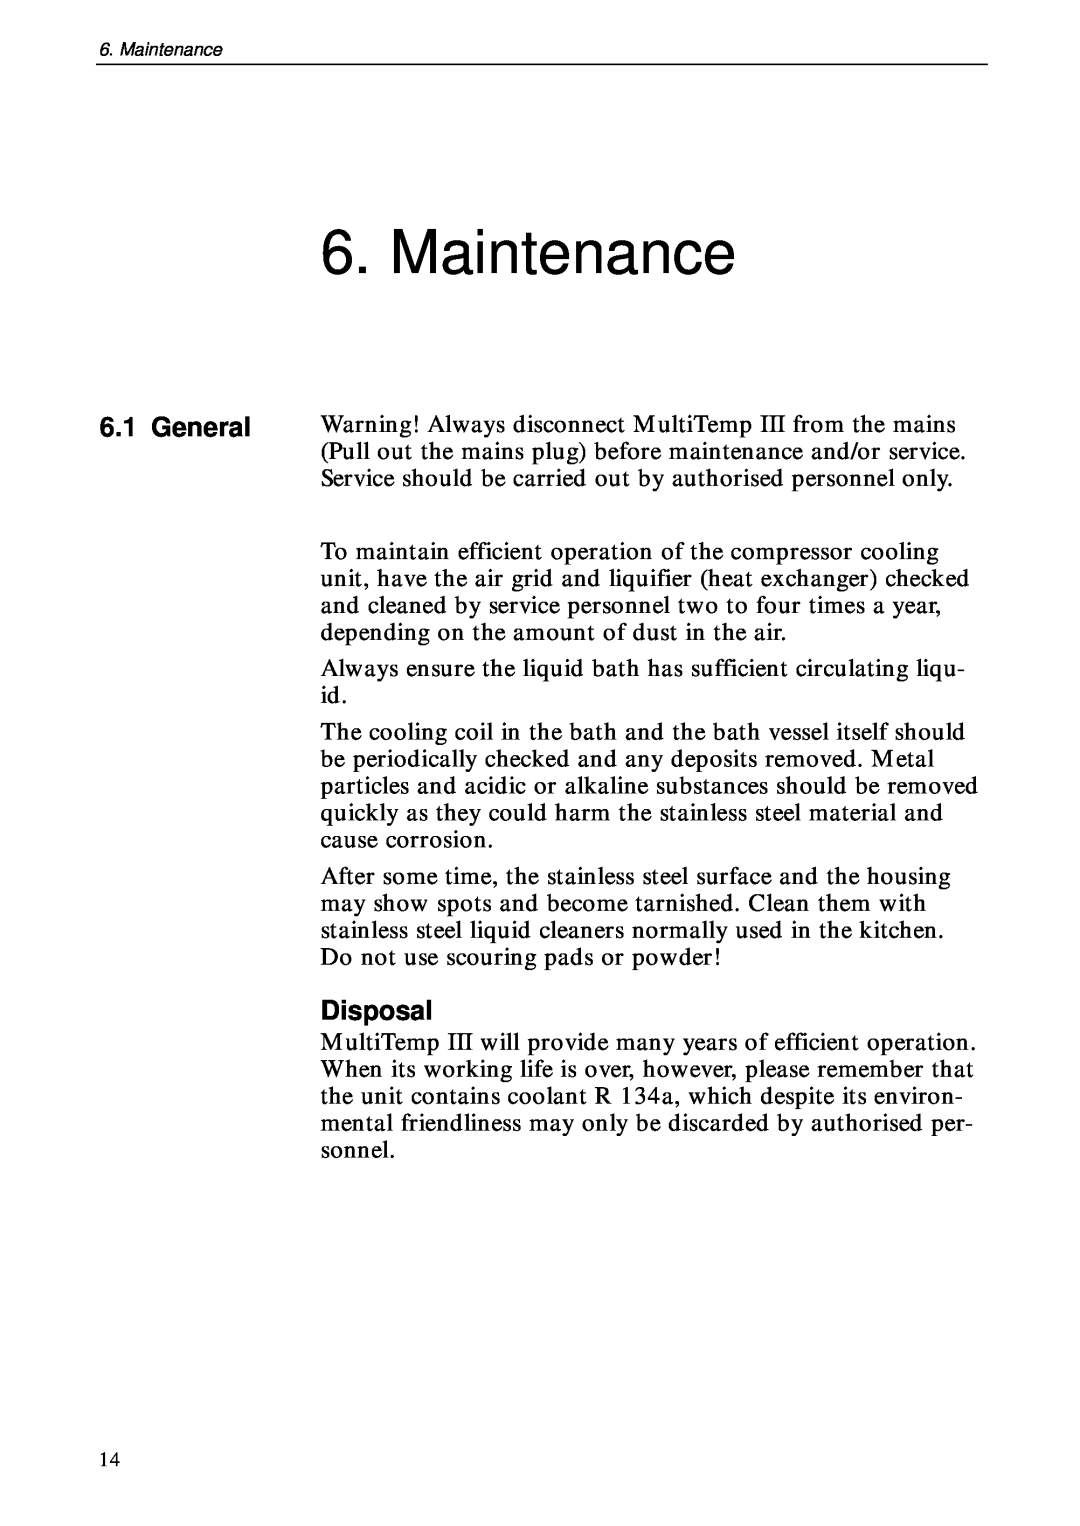 TRENDnet 18-1106-33 user manual Maintenance, General, Disposal 